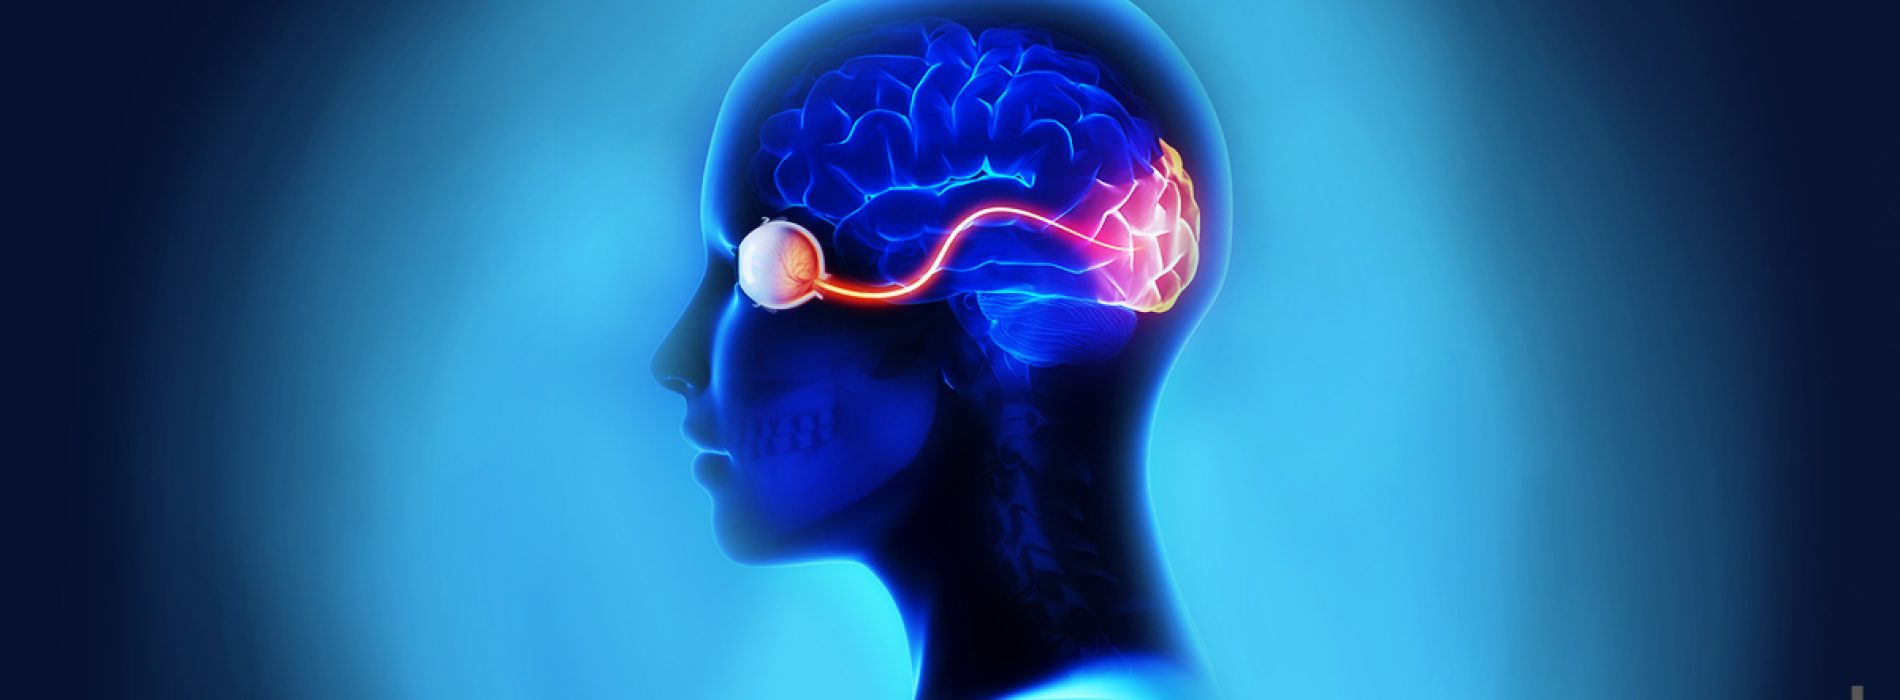 Het verband tussen hersenen en ooggezondheid